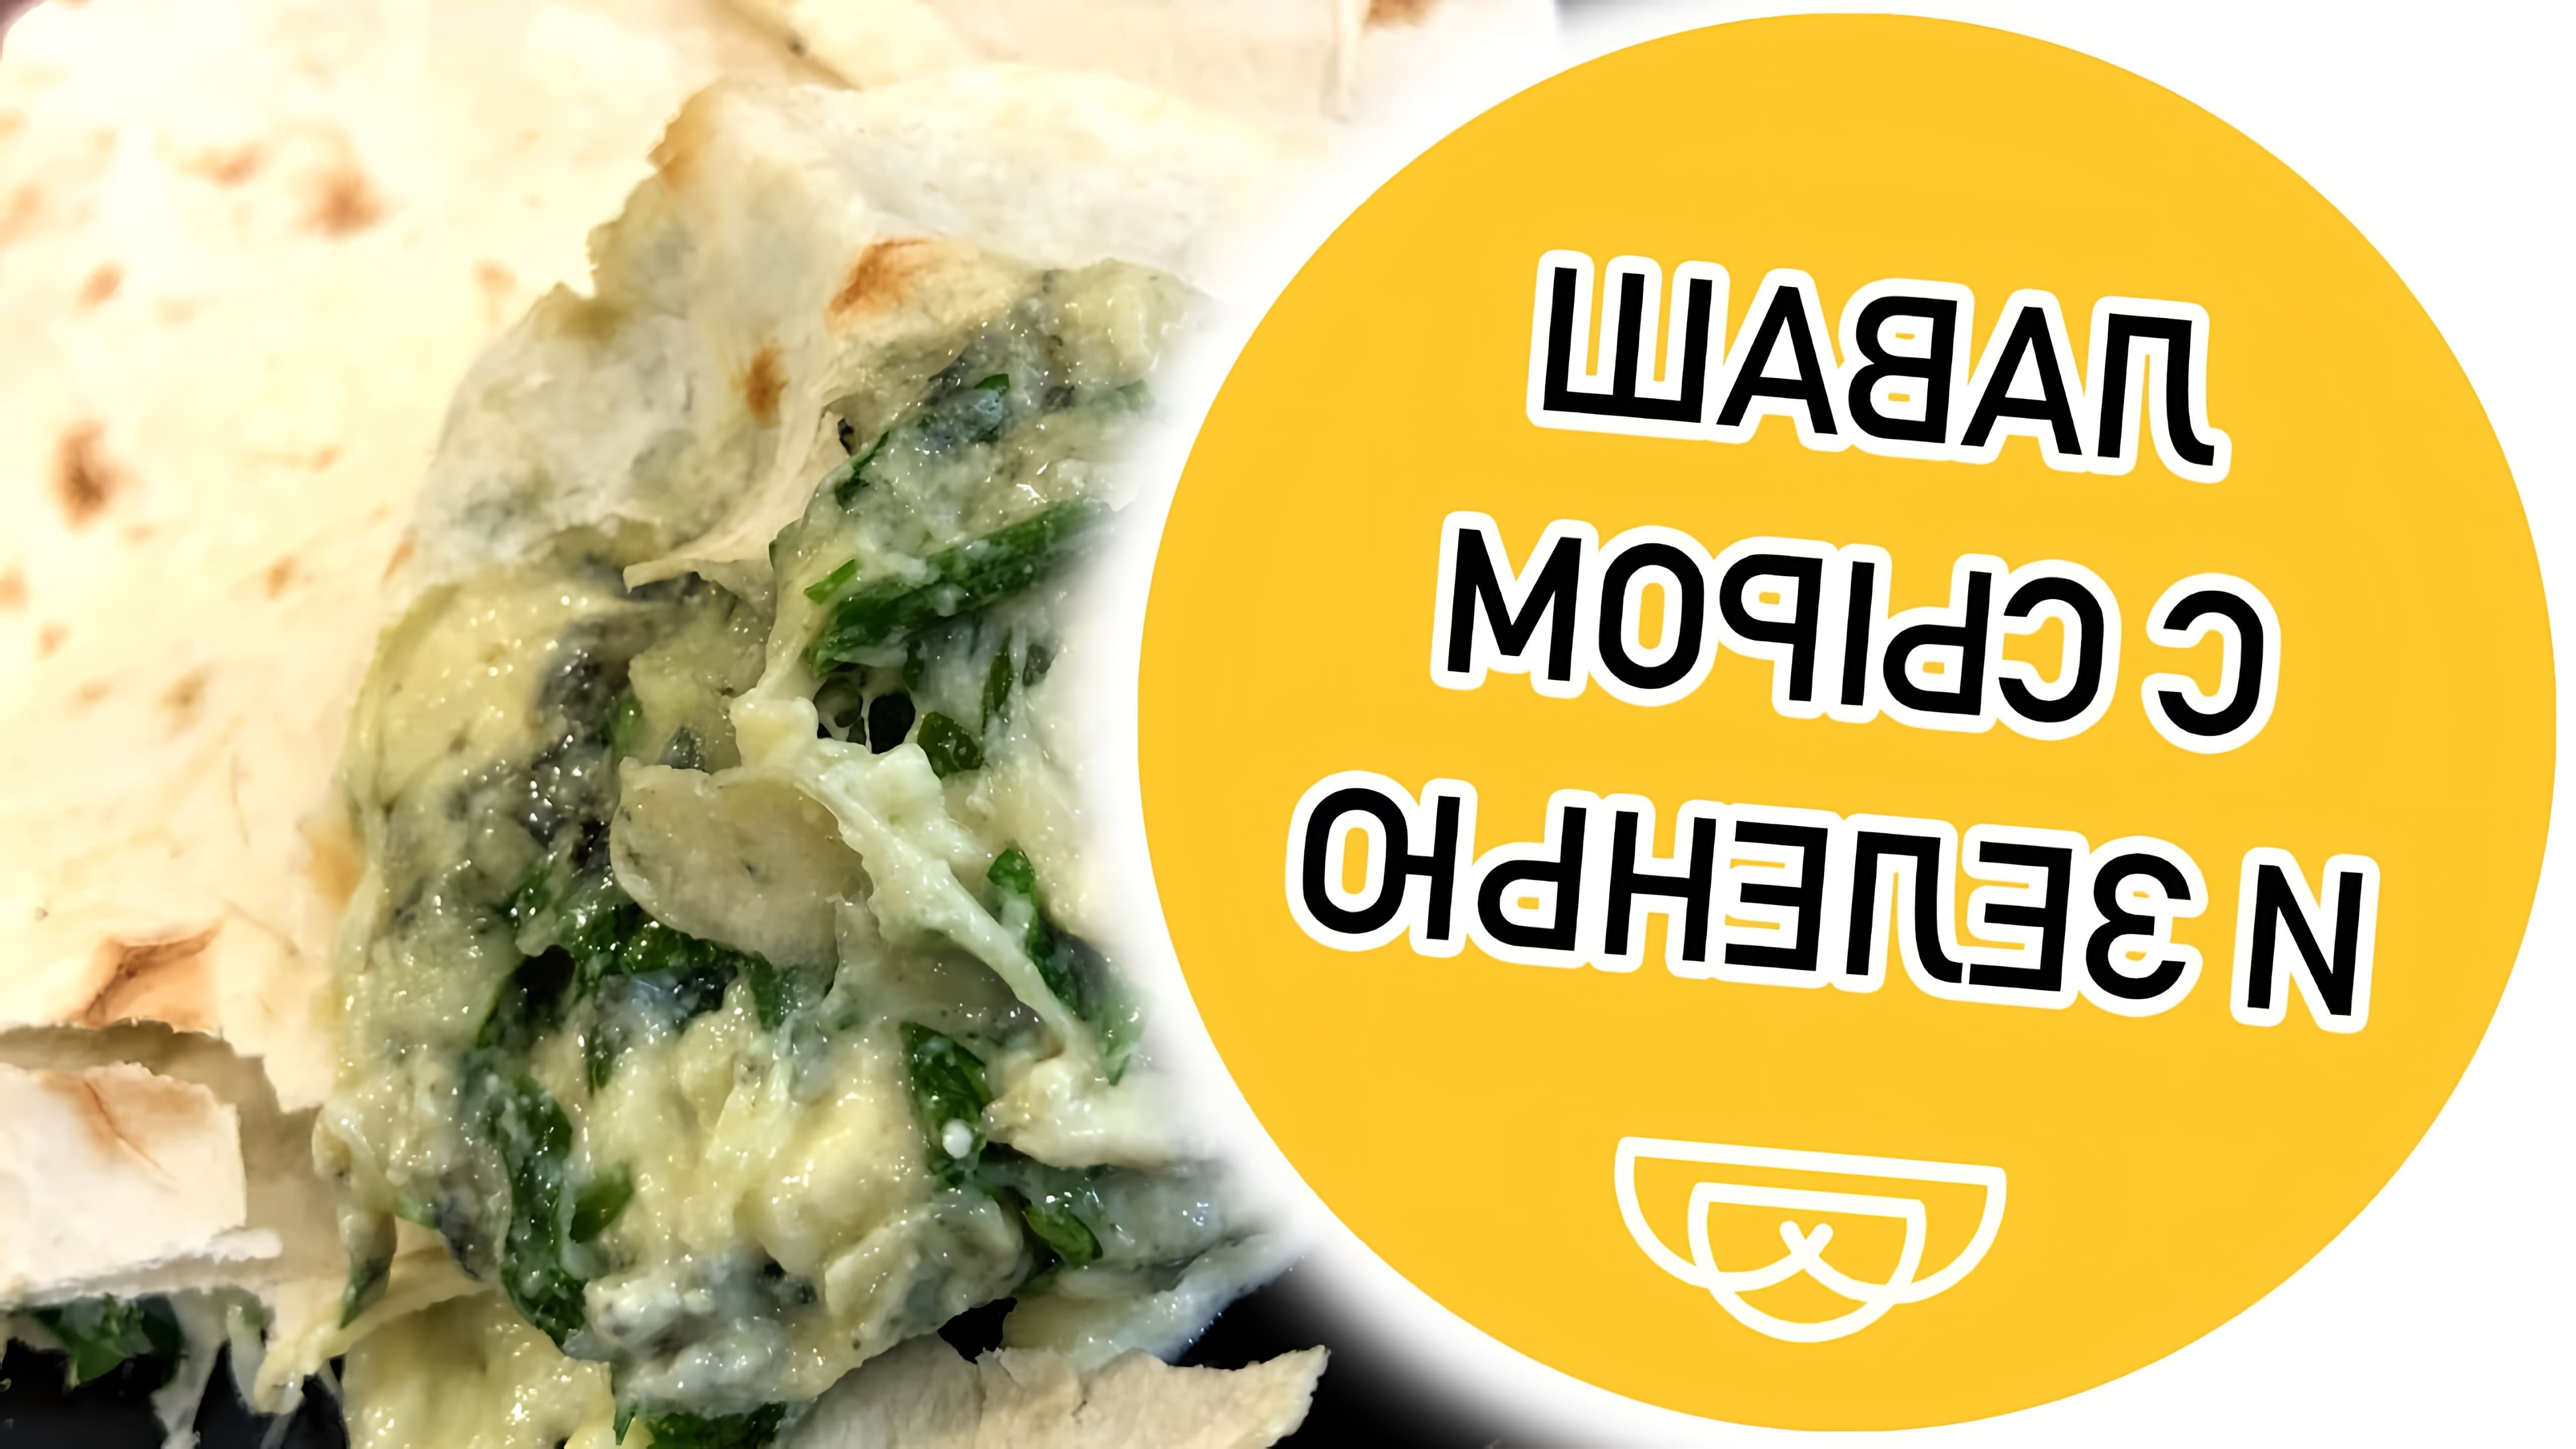 В этом видео демонстрируется процесс приготовления лаваша с сыром и зеленью